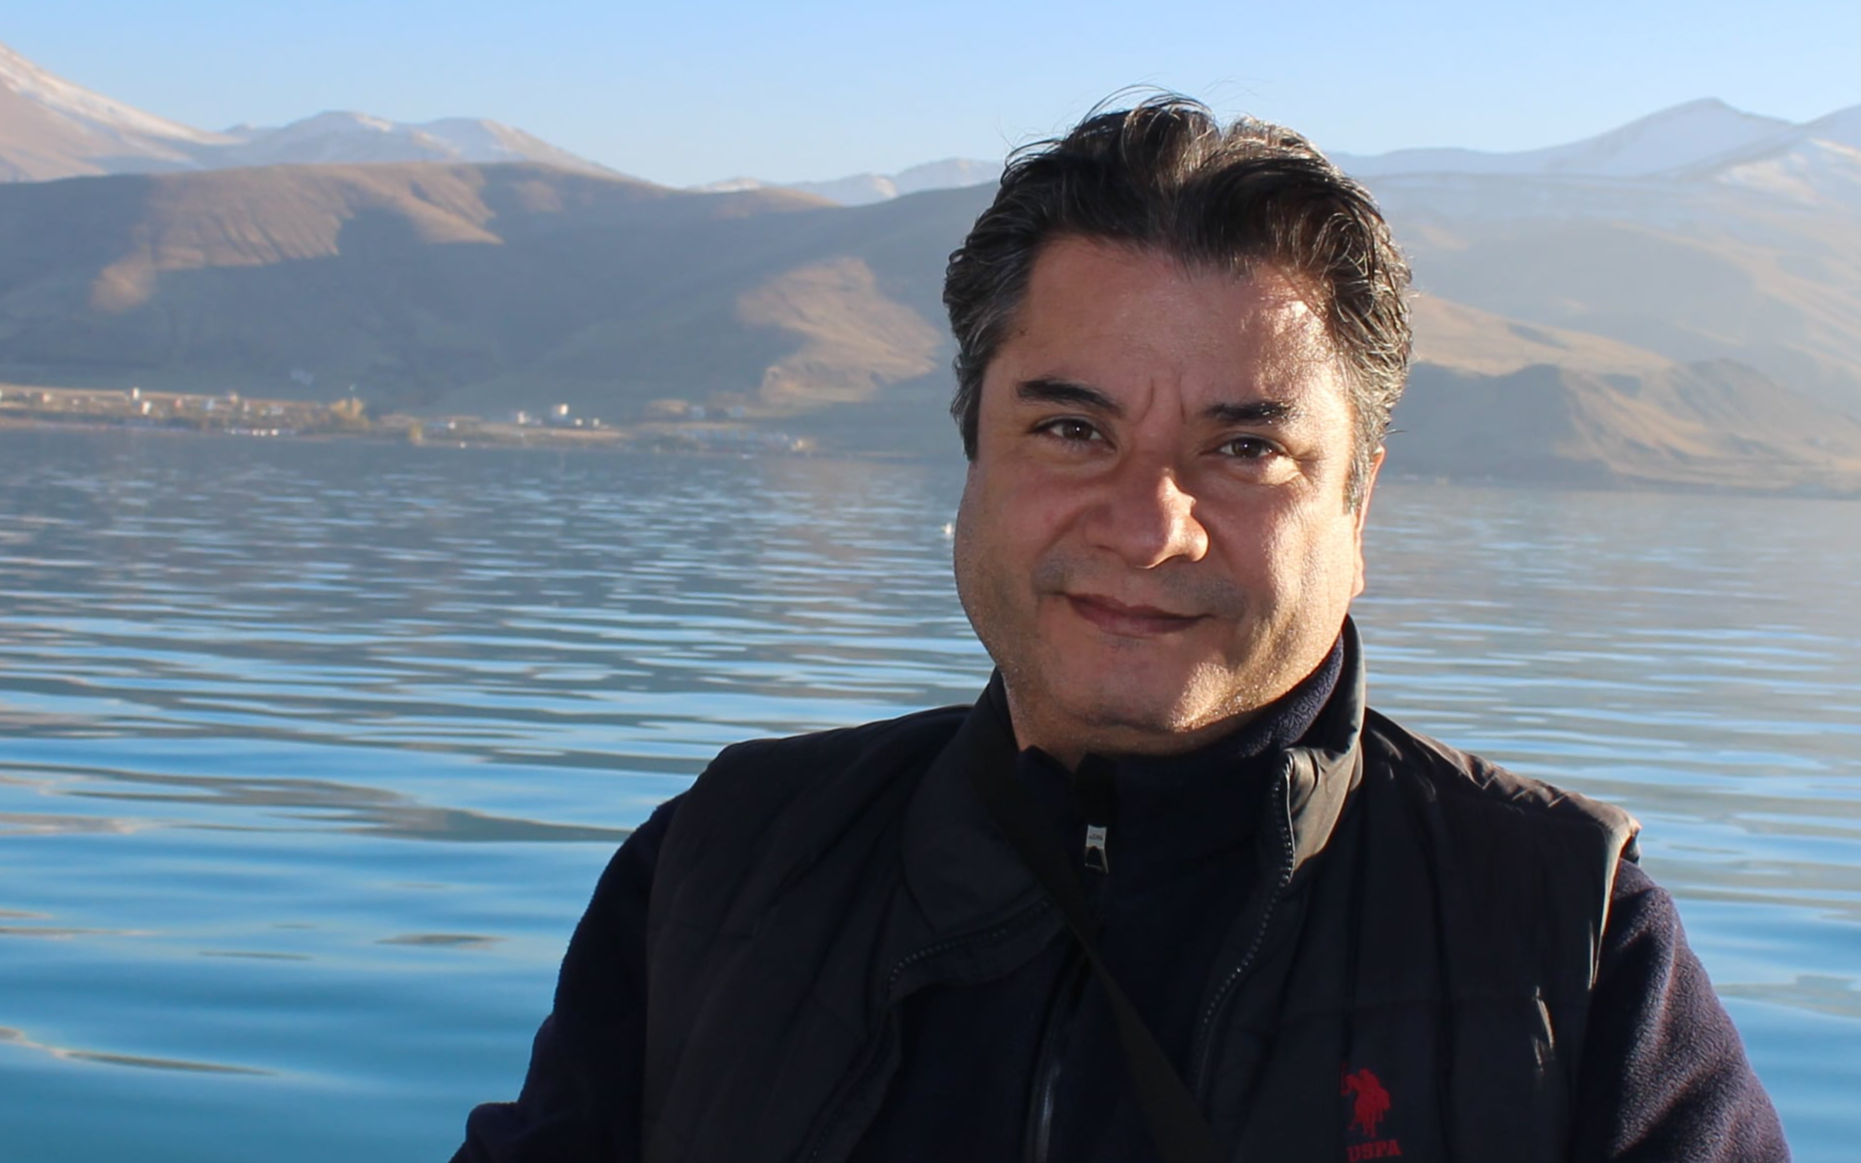 Gazeteci Yusuf Yavuz'un sitesine erişim engeli getirildi